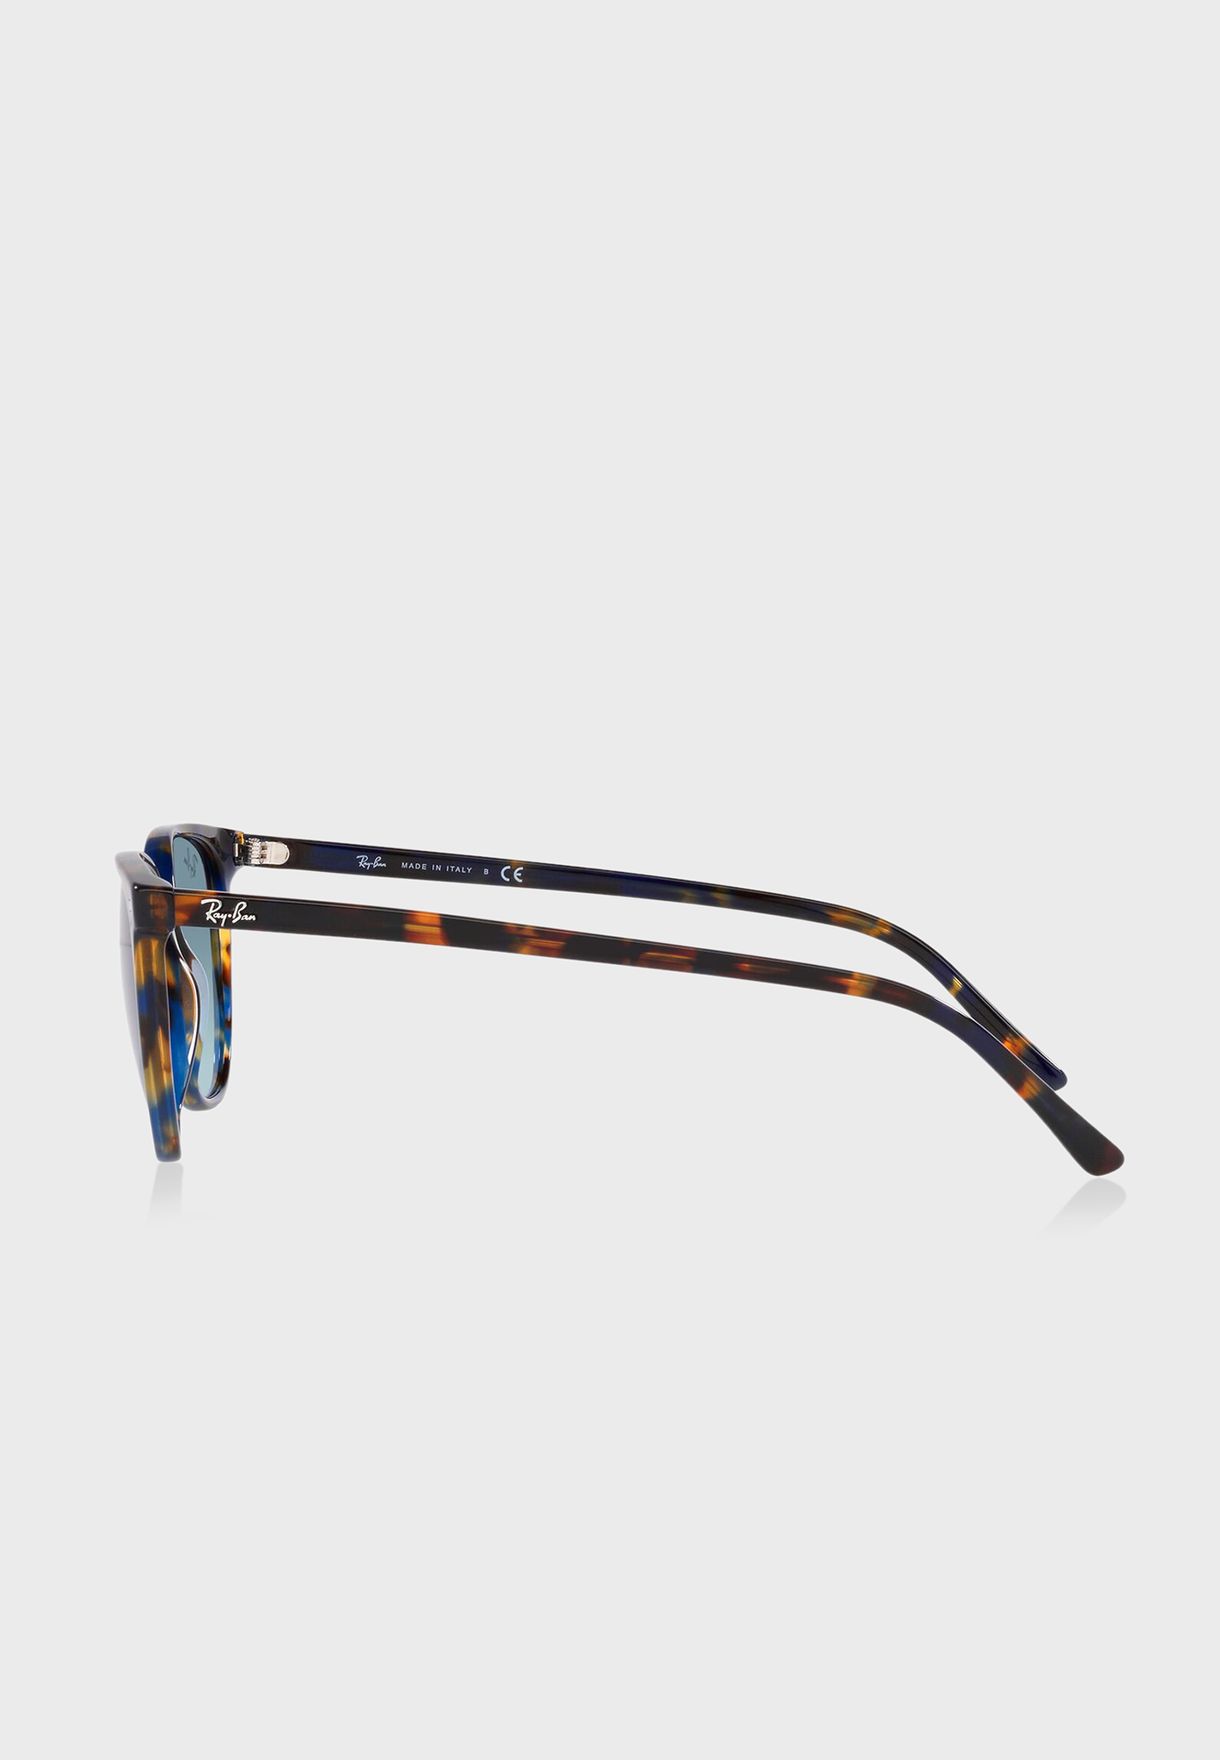 نظارة شمسية واي فيريرز 0Rb2197